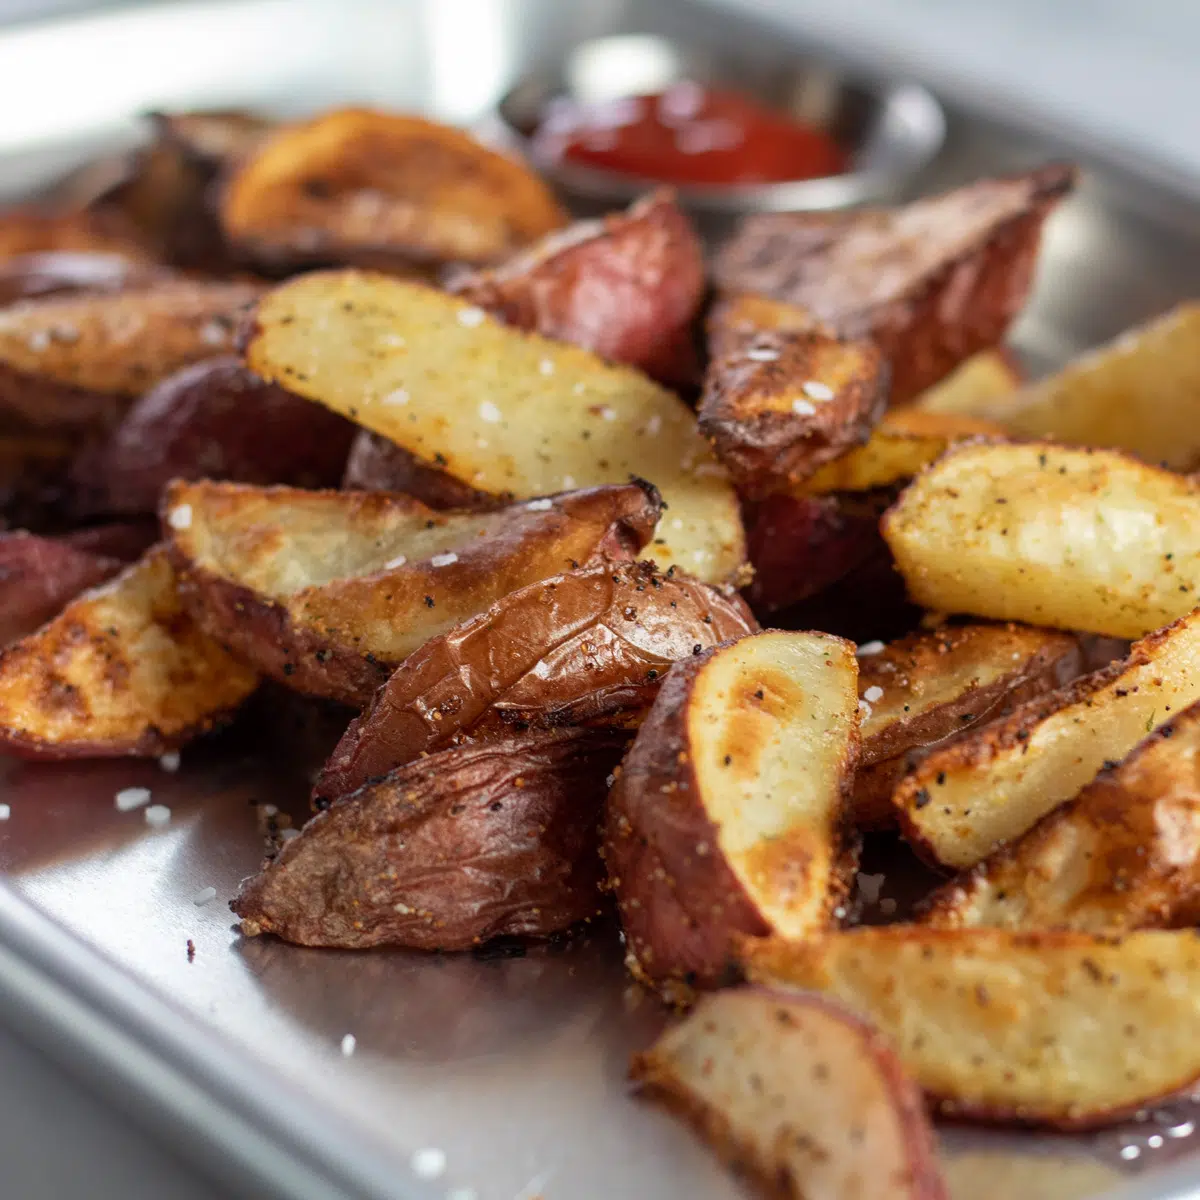 صورة مربعة لأوتاد البطاطا الحمراء المحمصة.